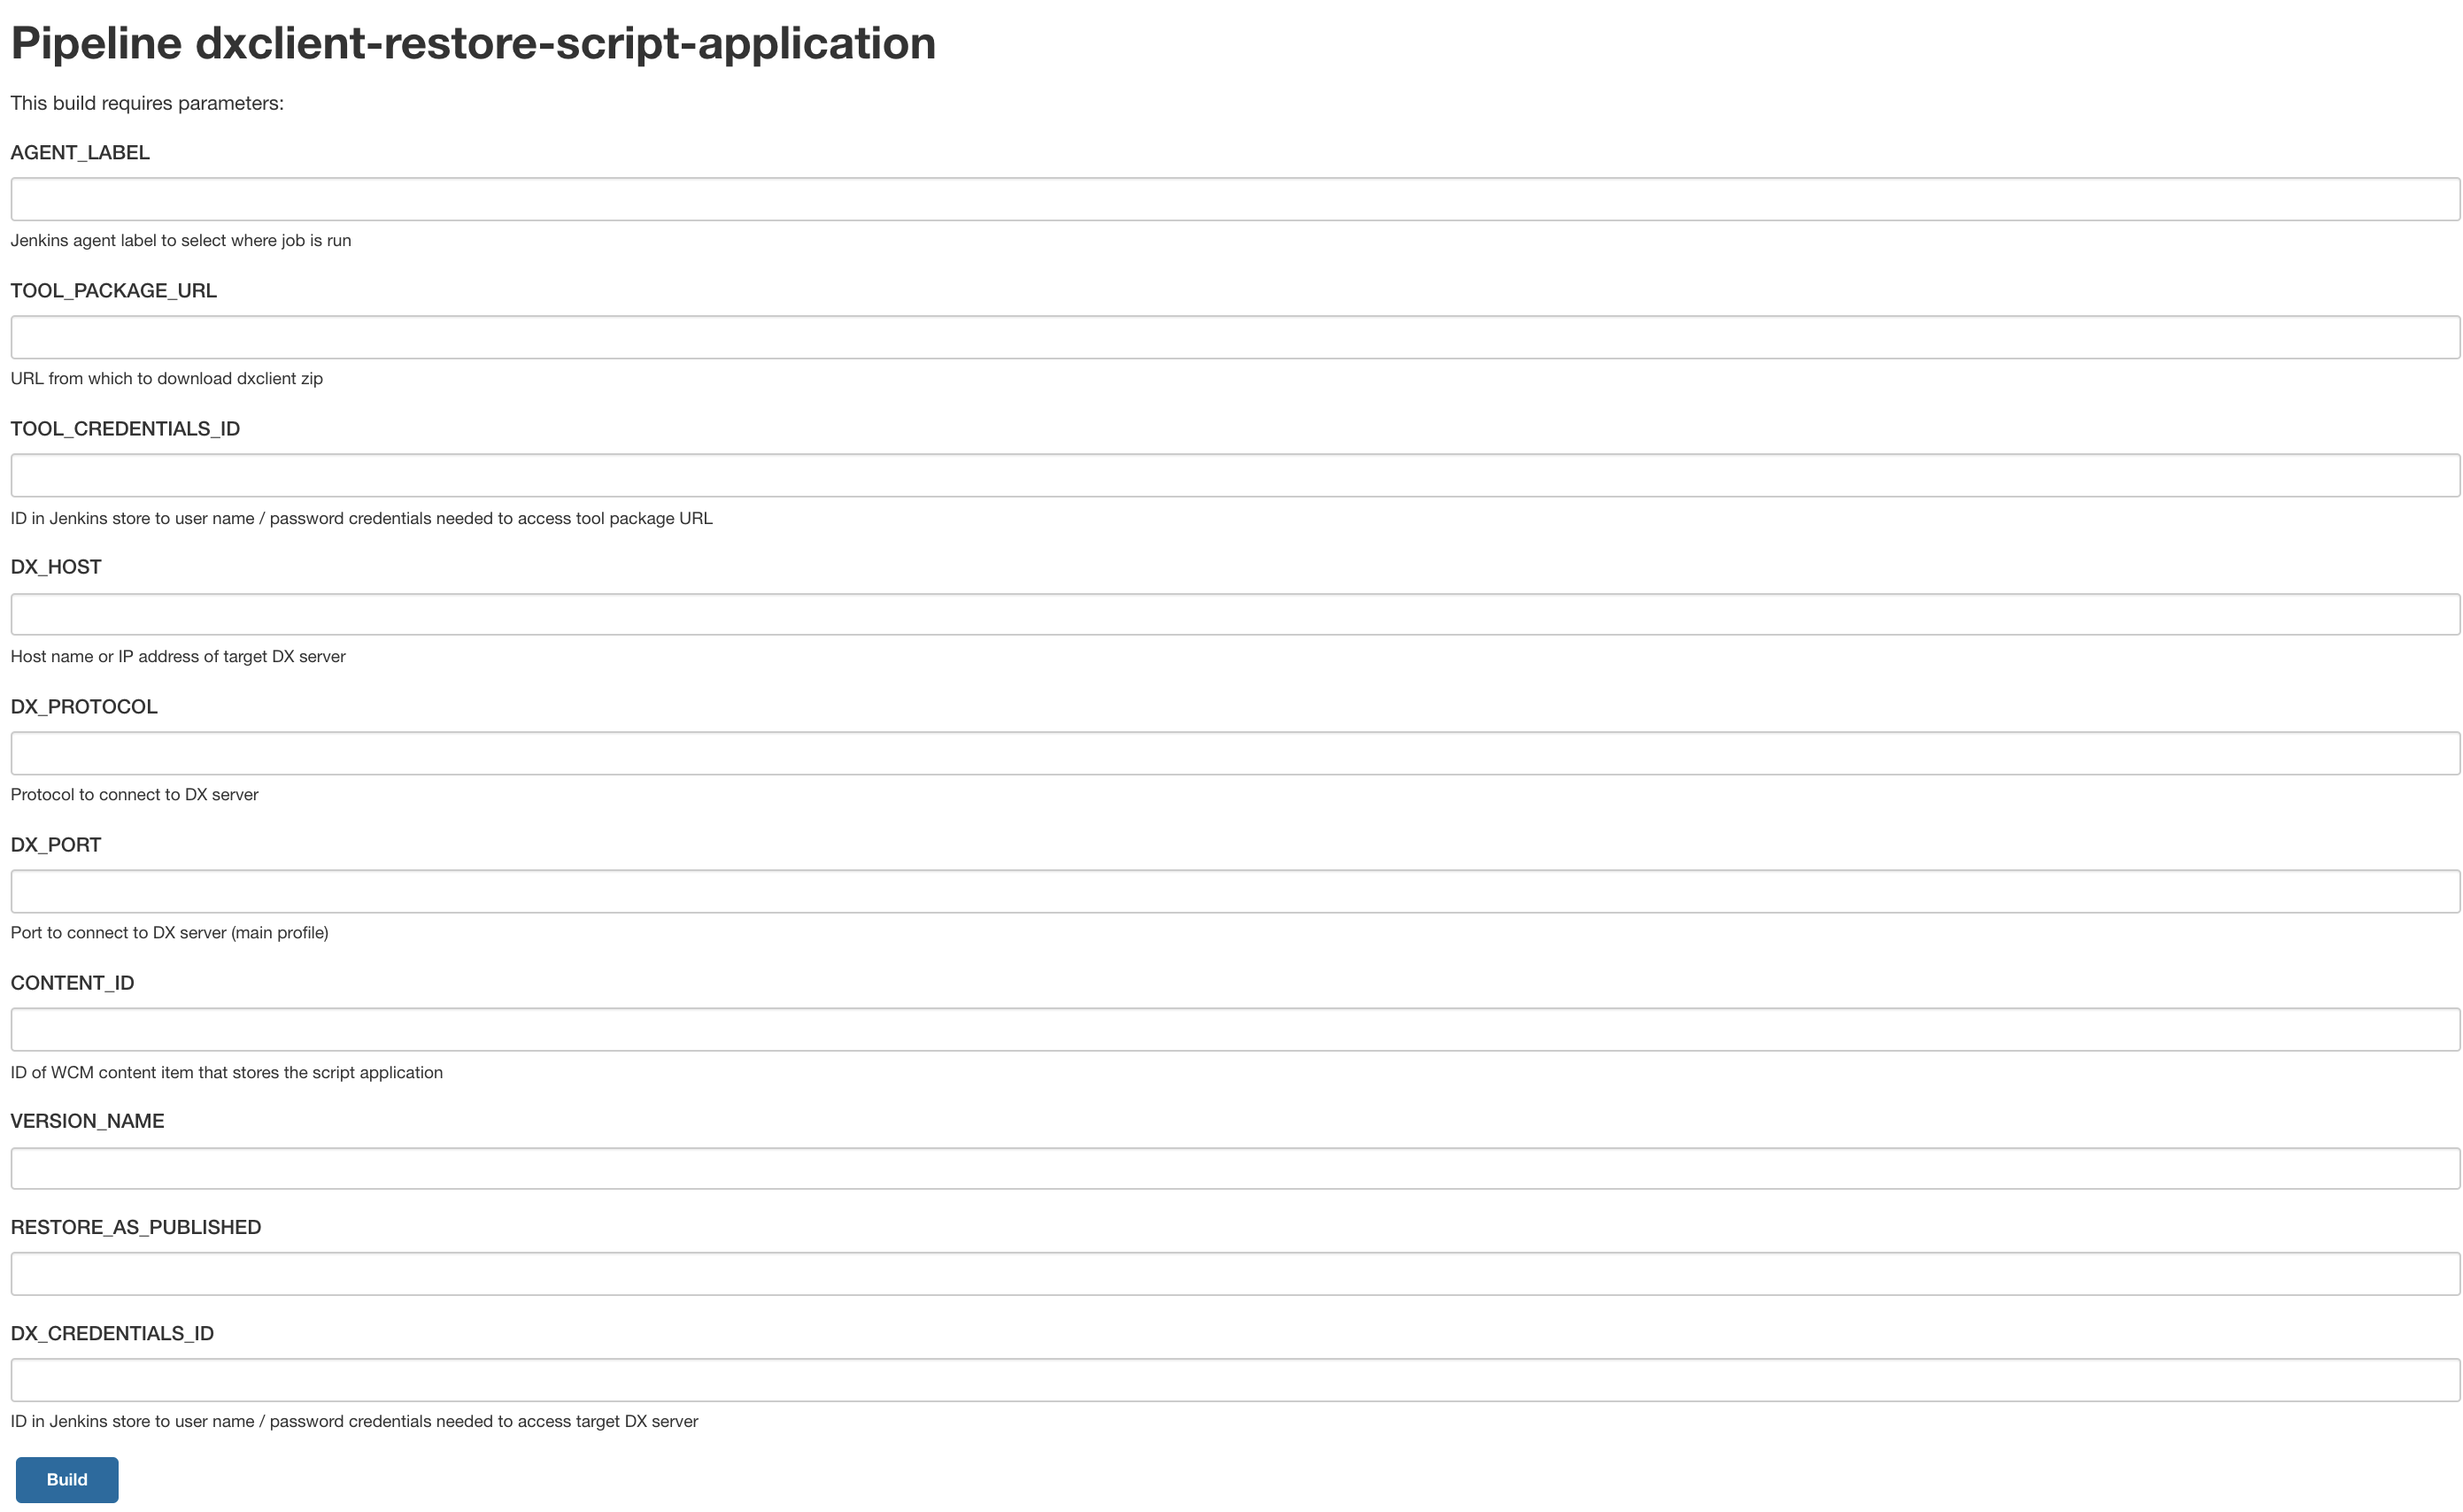 Pipeline DXClient deploy script application sample